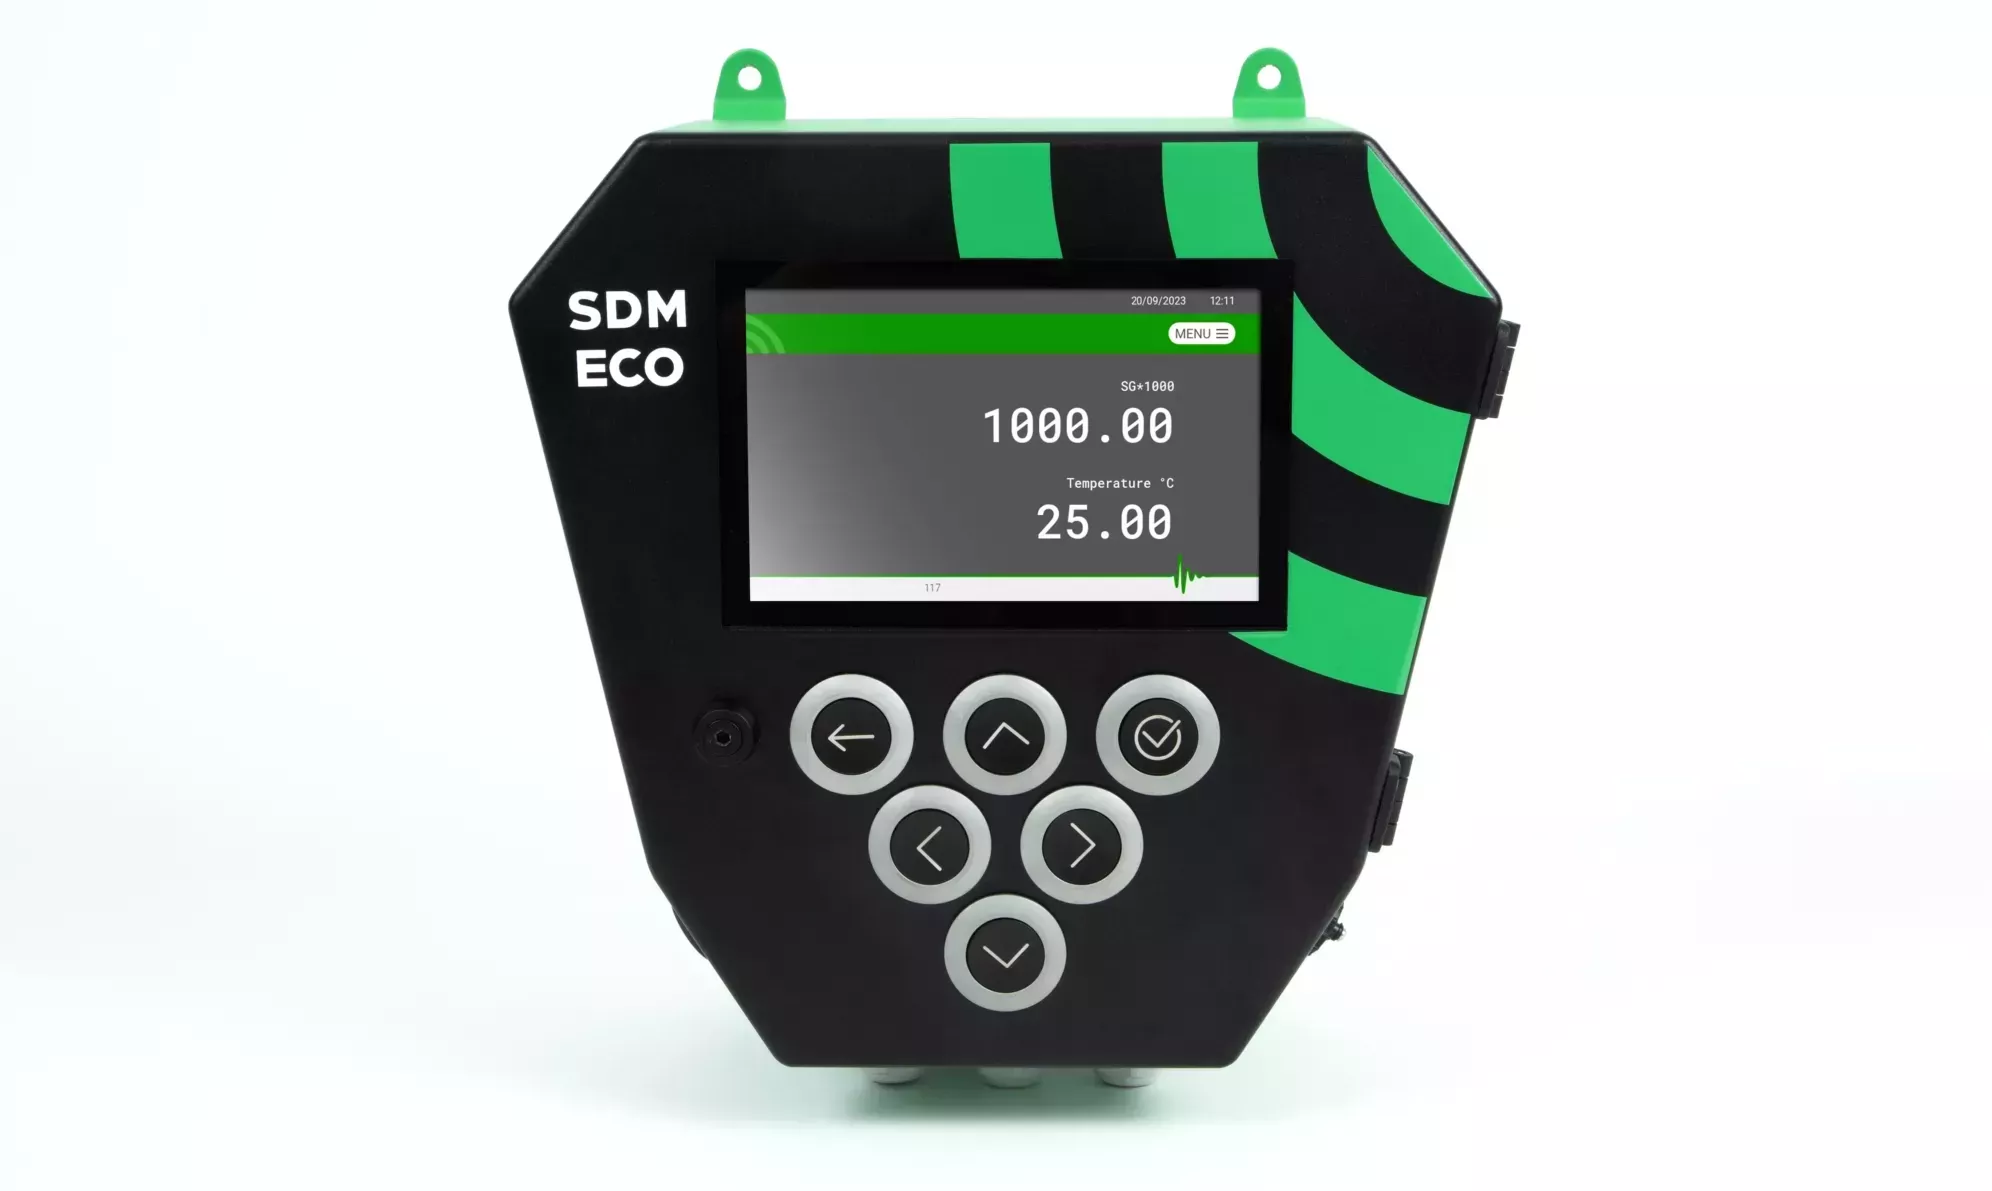 The SDM ECO HMI control unit